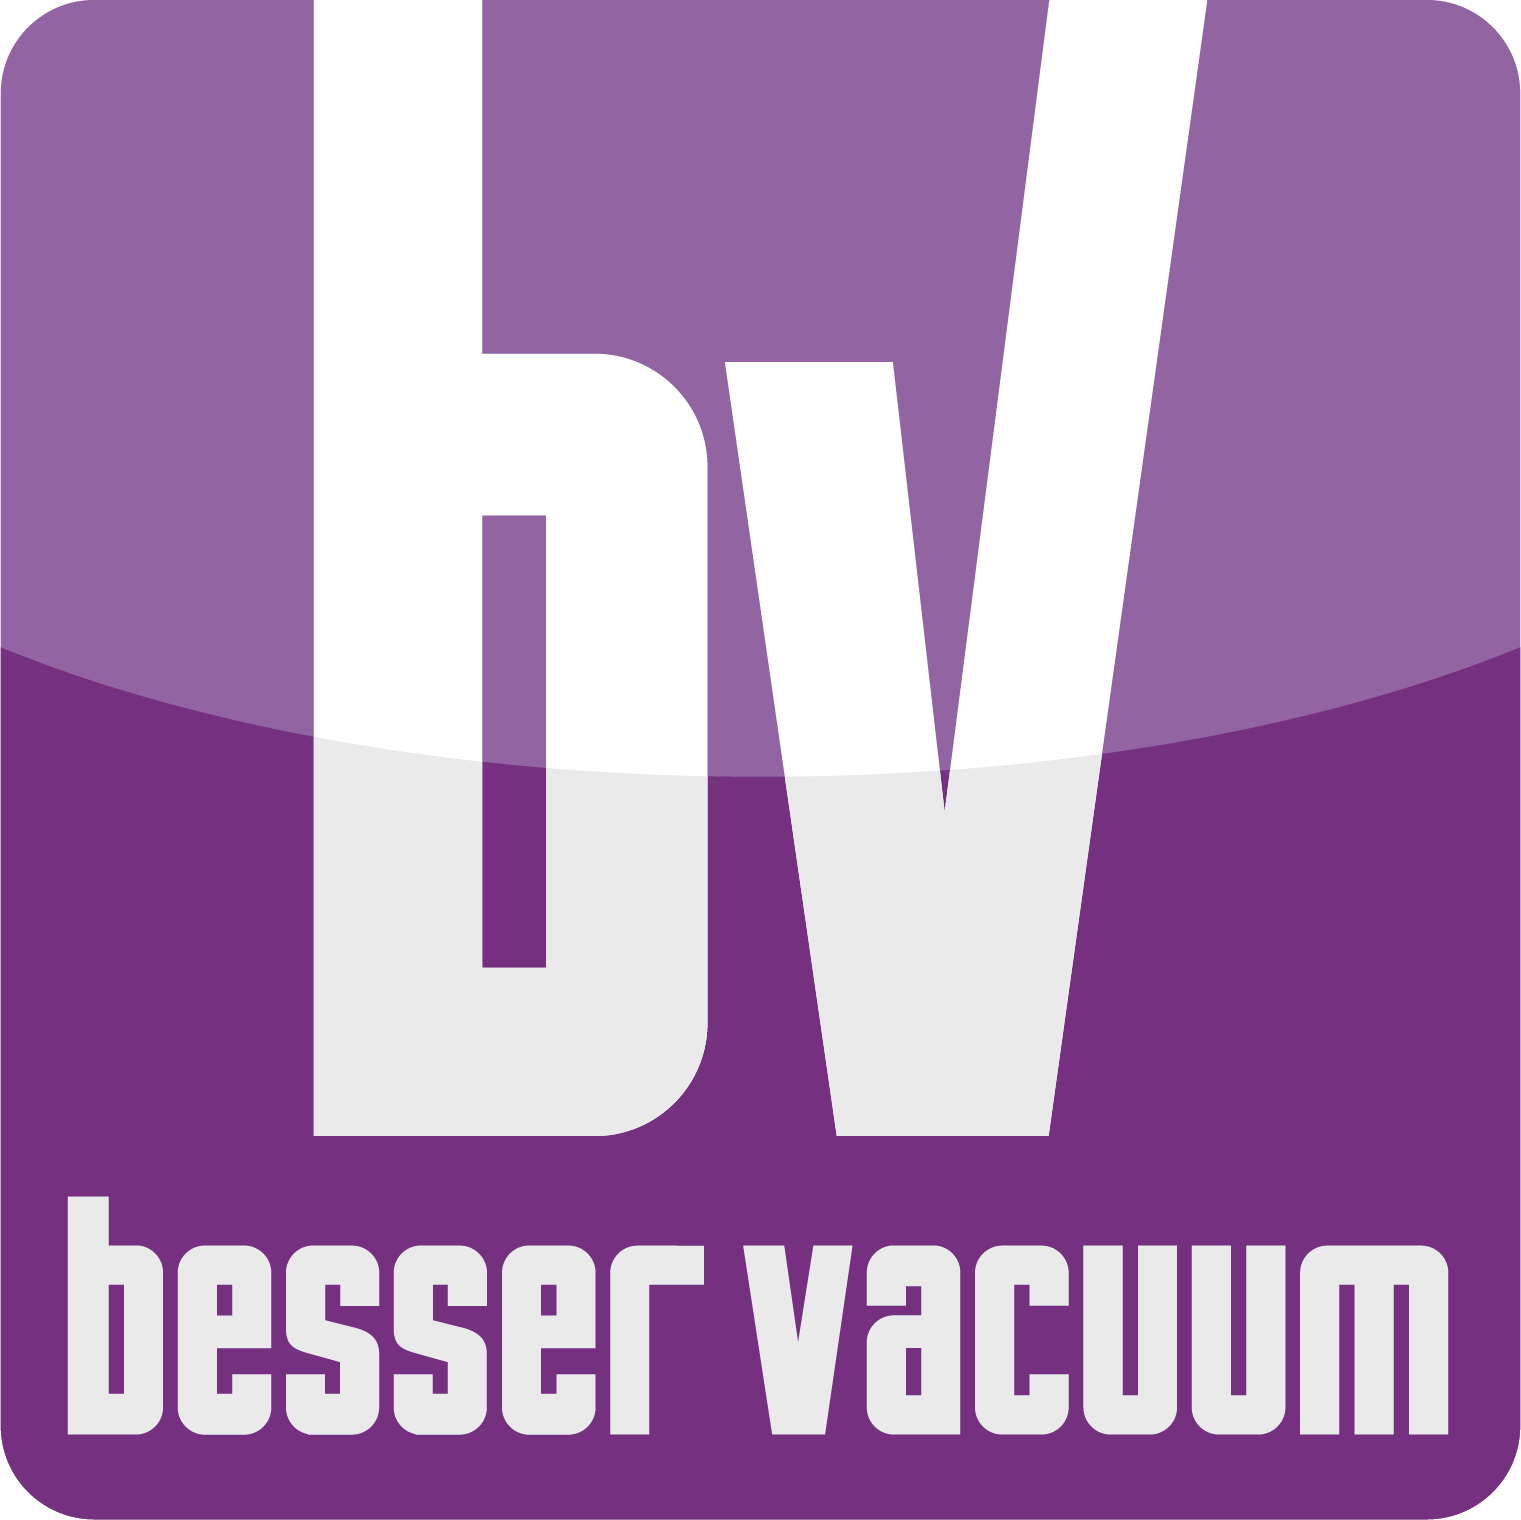 Basser Vaccum